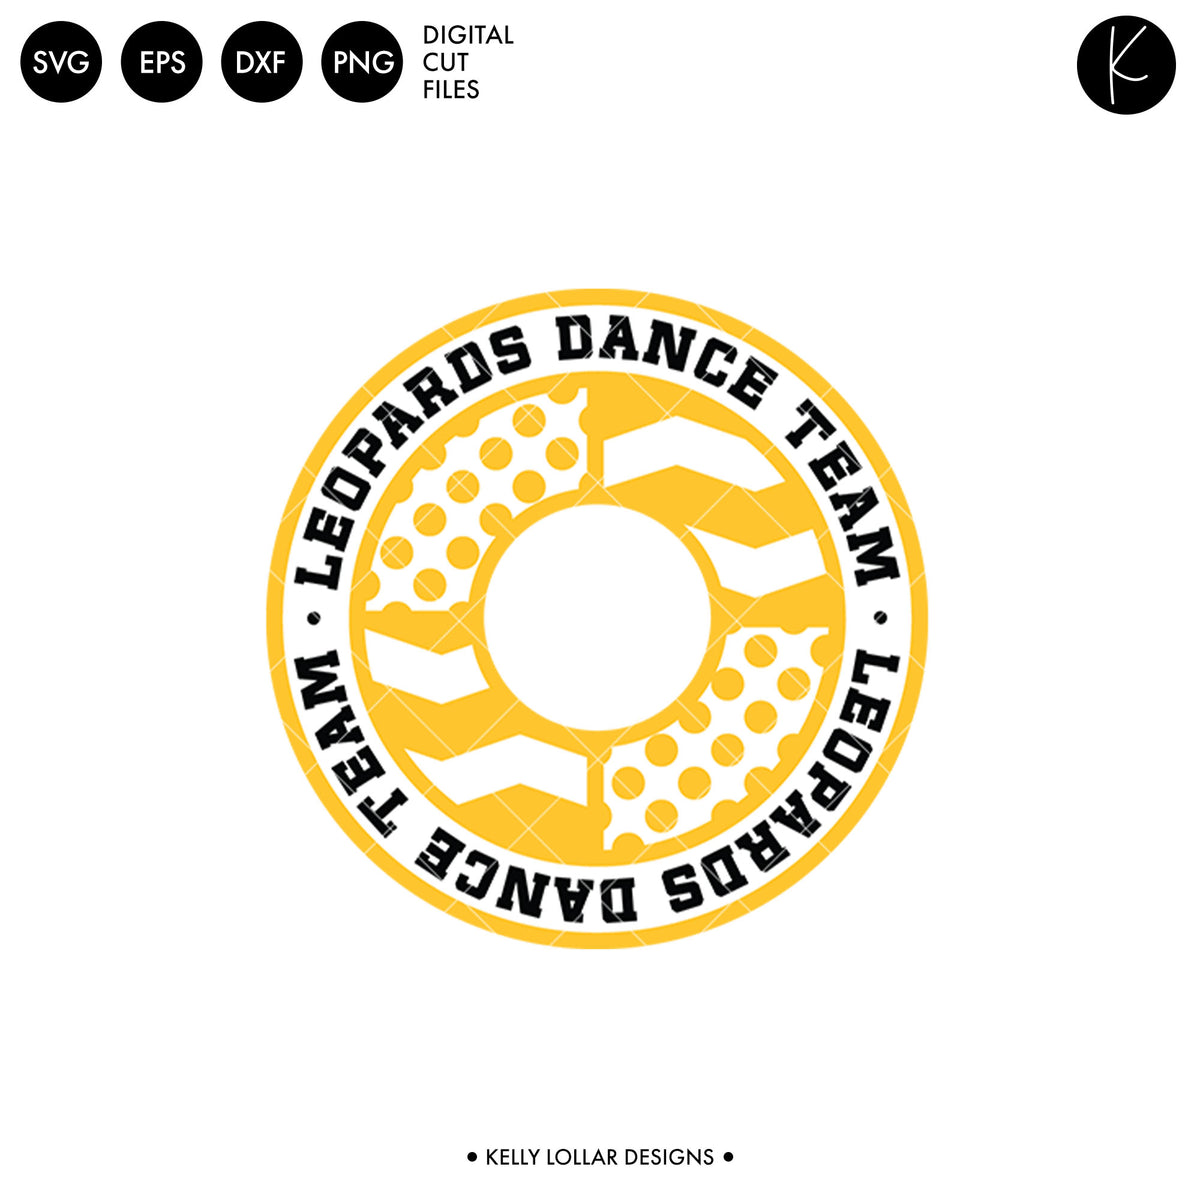 Leopards Dance Bundle | SVG DXF EPS PNG Cut Files